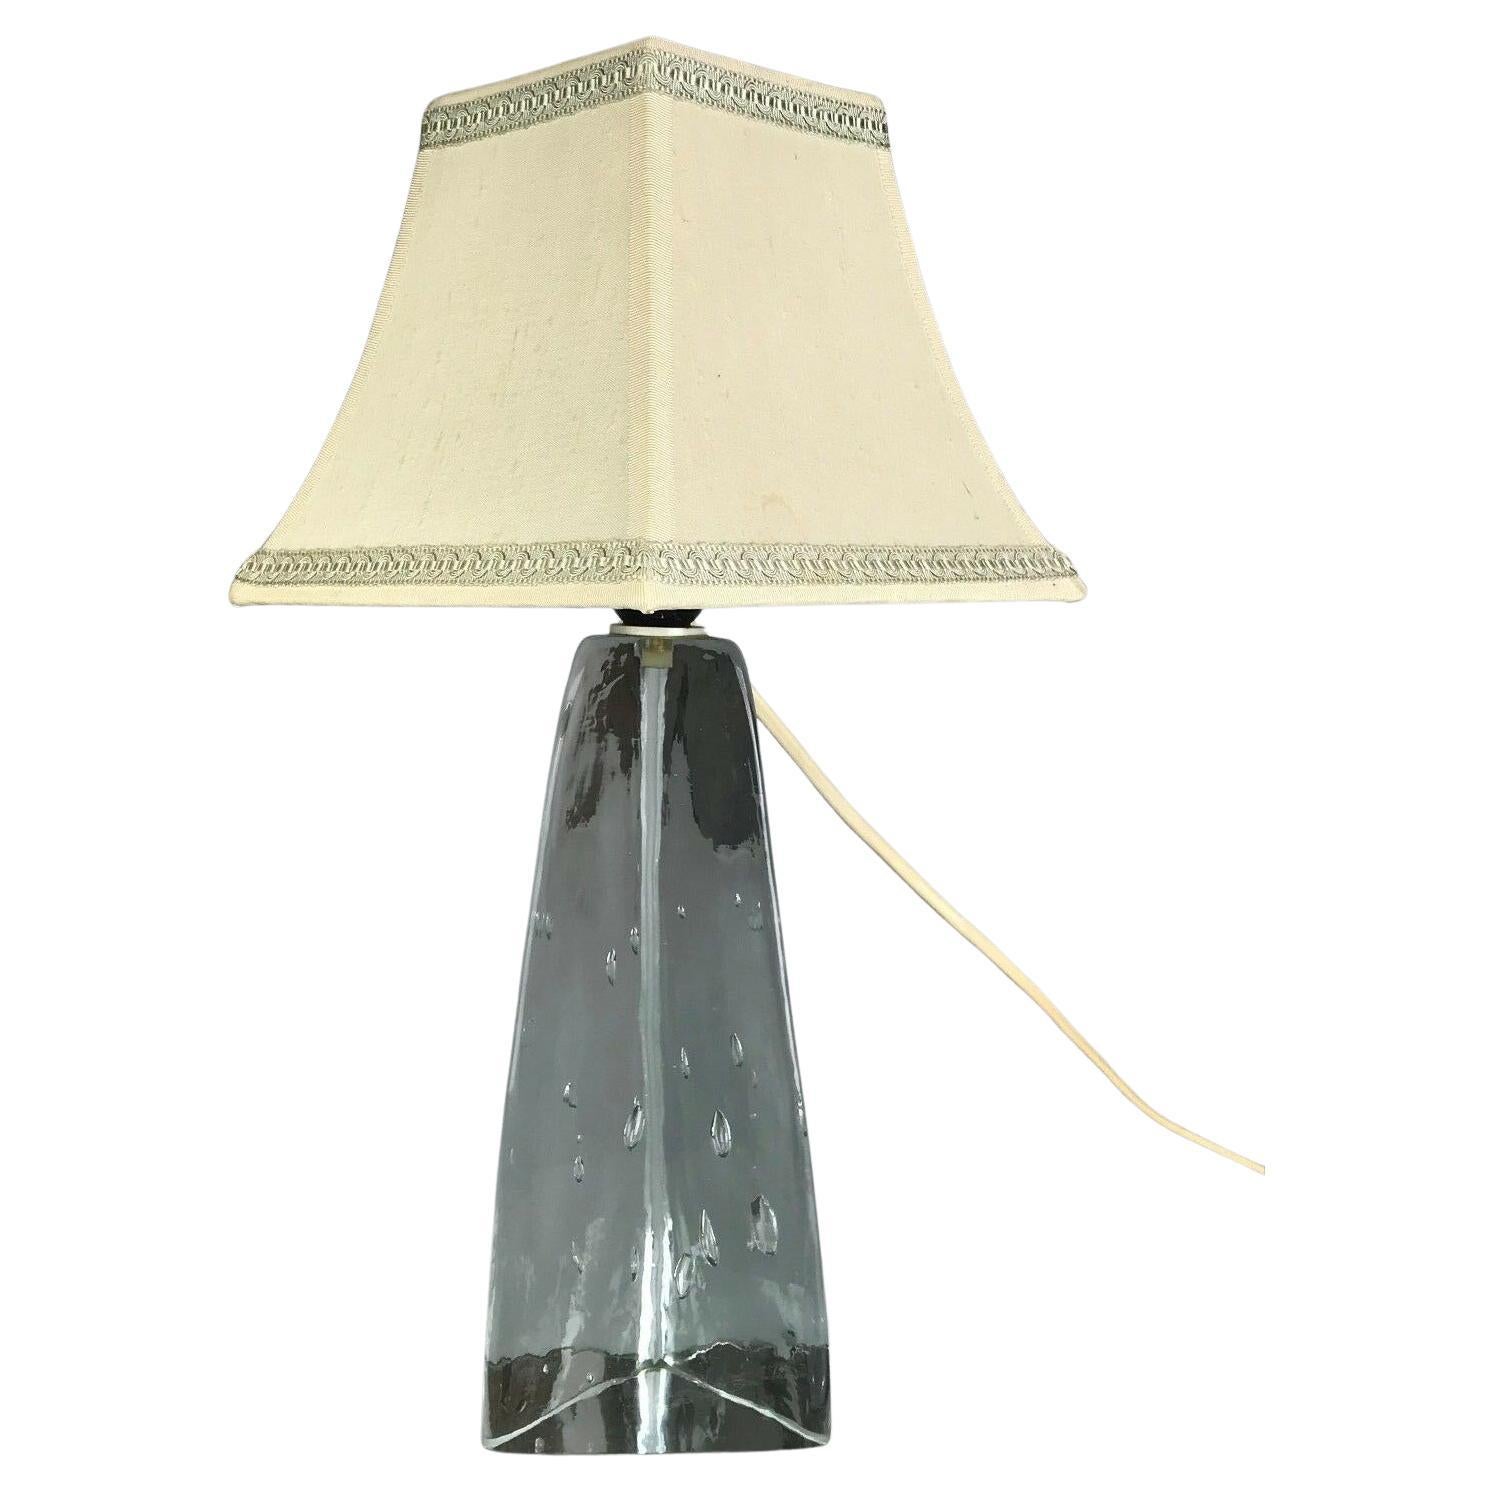 60er-Jahre-Lampe/Tischlampe, Glas, Space Age Design